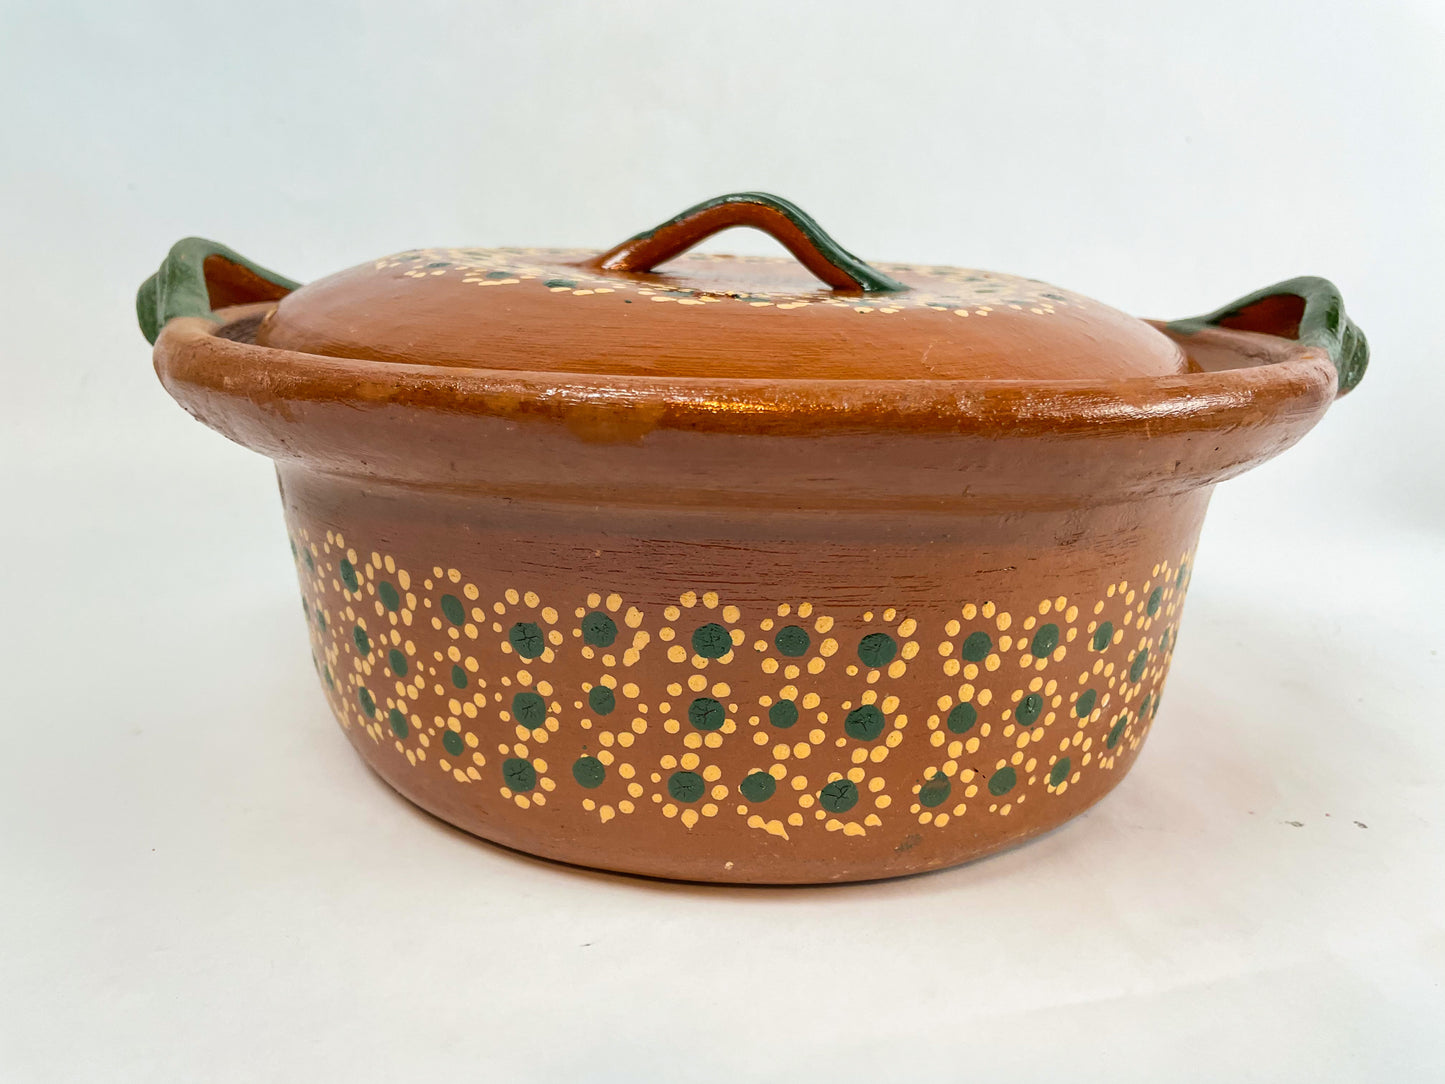 Michoacan Mexican Clay Cazuela Cooking Pot Lead Free Authentic Clay Pots Sarten de Barro Hondo Casuela